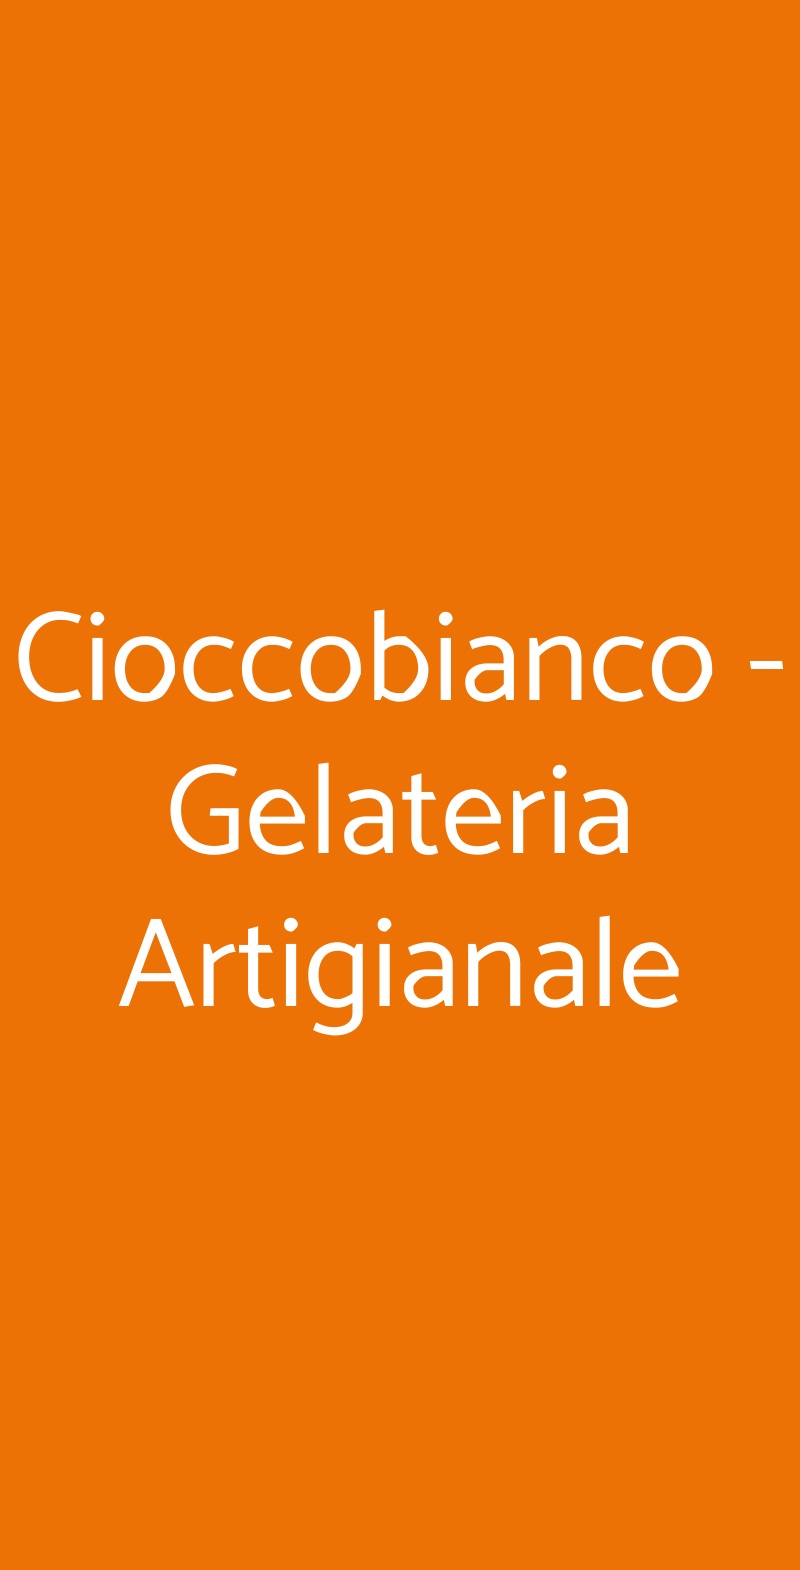 Cioccobianco - Gelateria Artigianale Milano menù 1 pagina